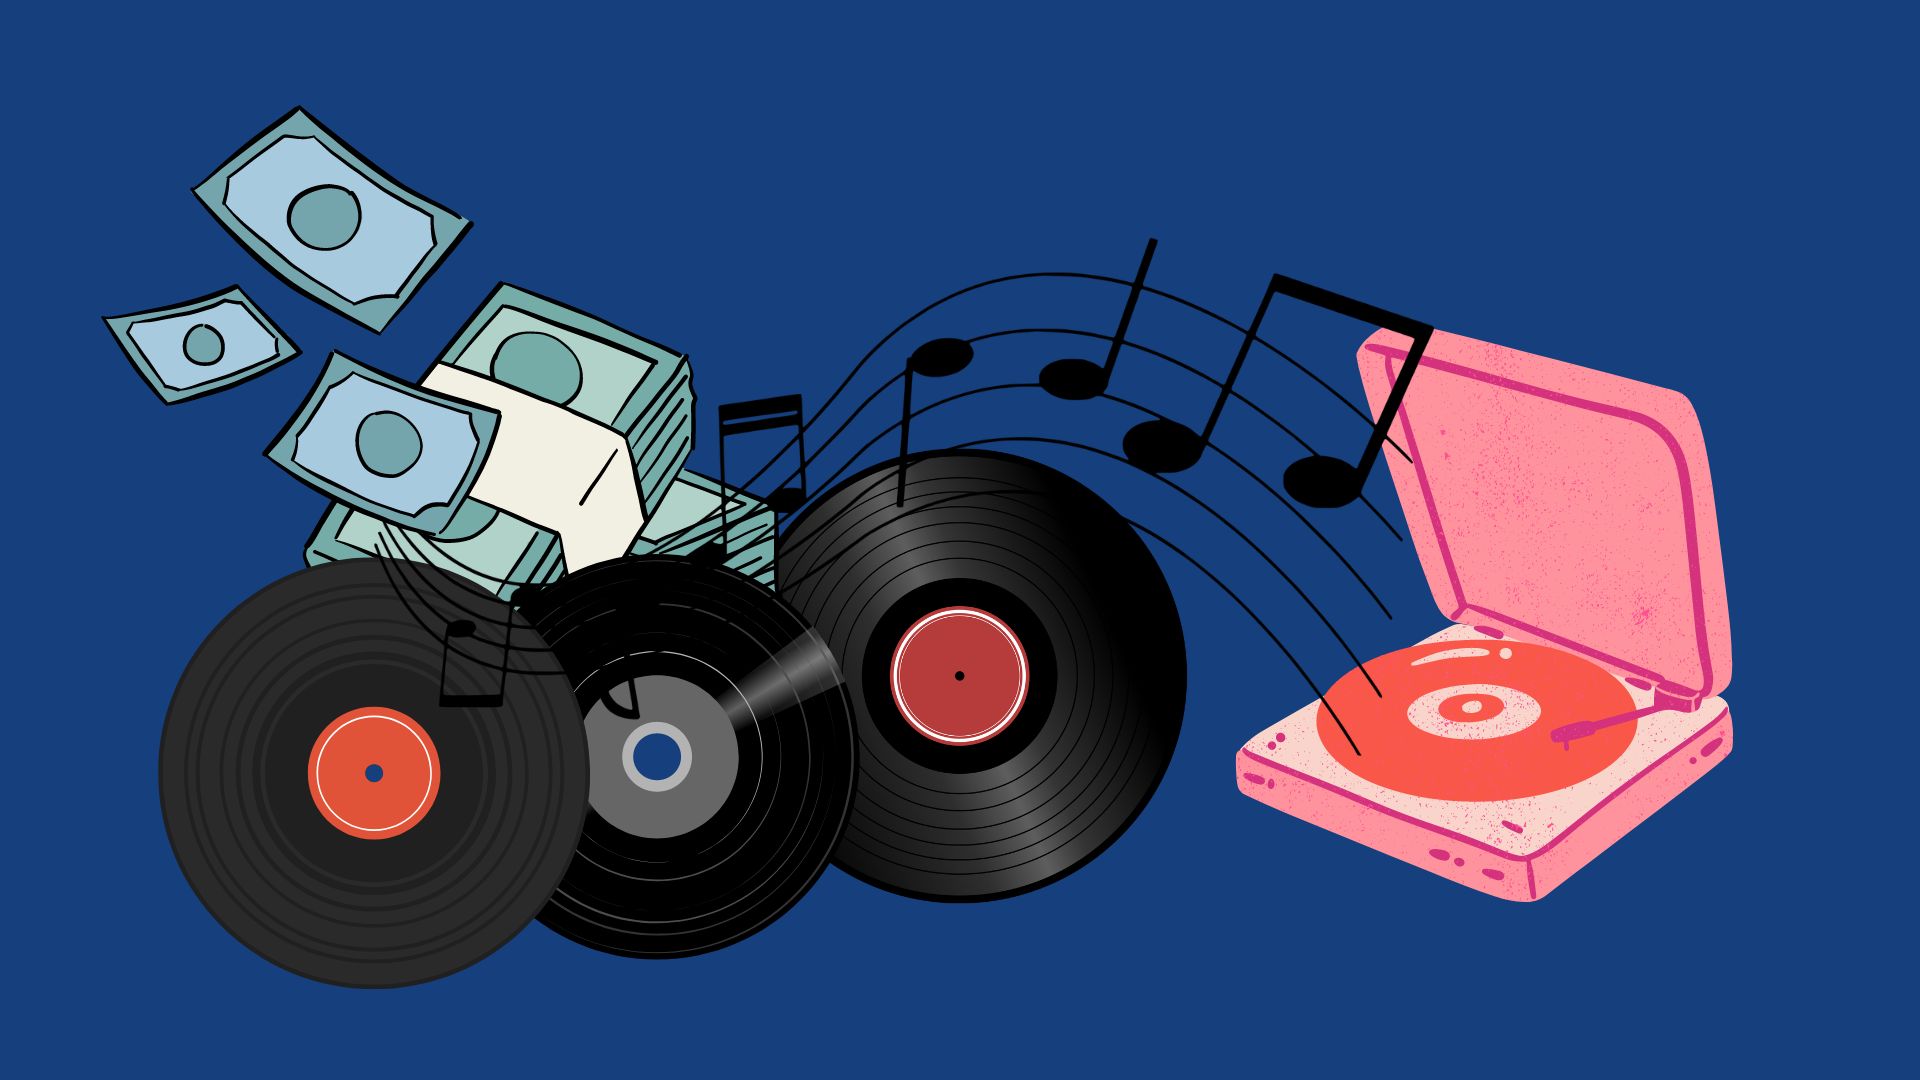 ยอดขายแผ่นเสียงไวนิลแซงหน้าซีดีเป็นครั้งแรกในรอบ 35 ปี กับ 5 เหตุผลที่แผ่นเสียงได้รับความนิยมอย่างสูง